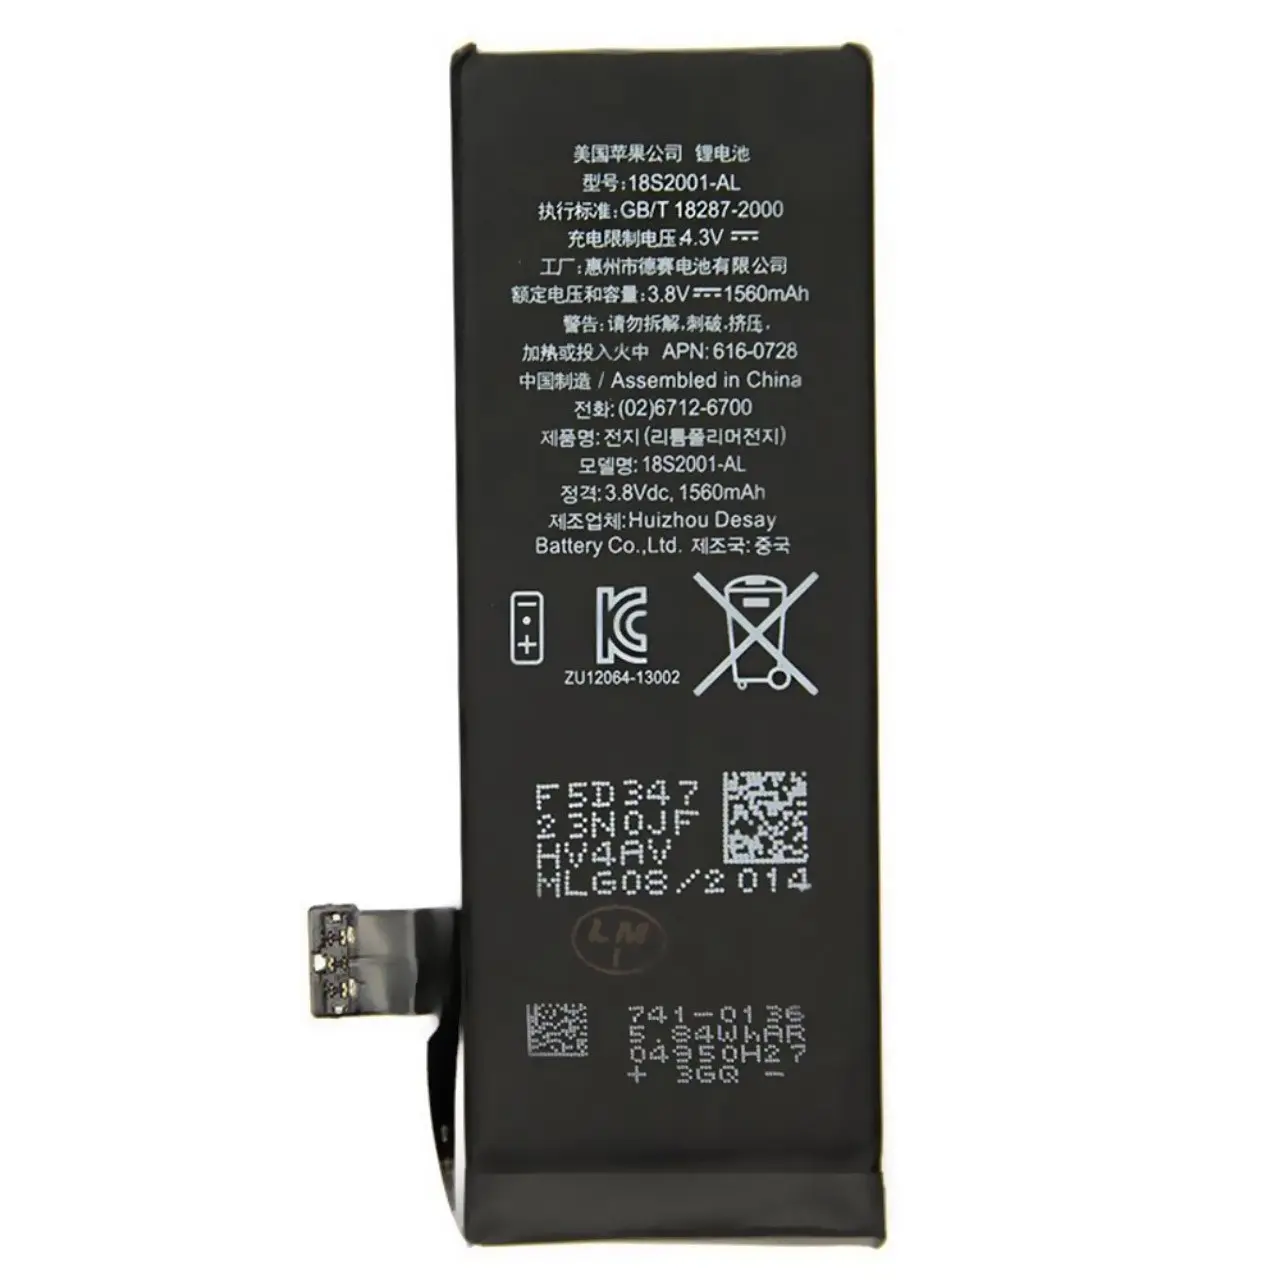 باتری موبایل مدل 18S2001-GL با ظرفیت 1560mAh مناسب برای گوشی های موبایل آیفون 5S